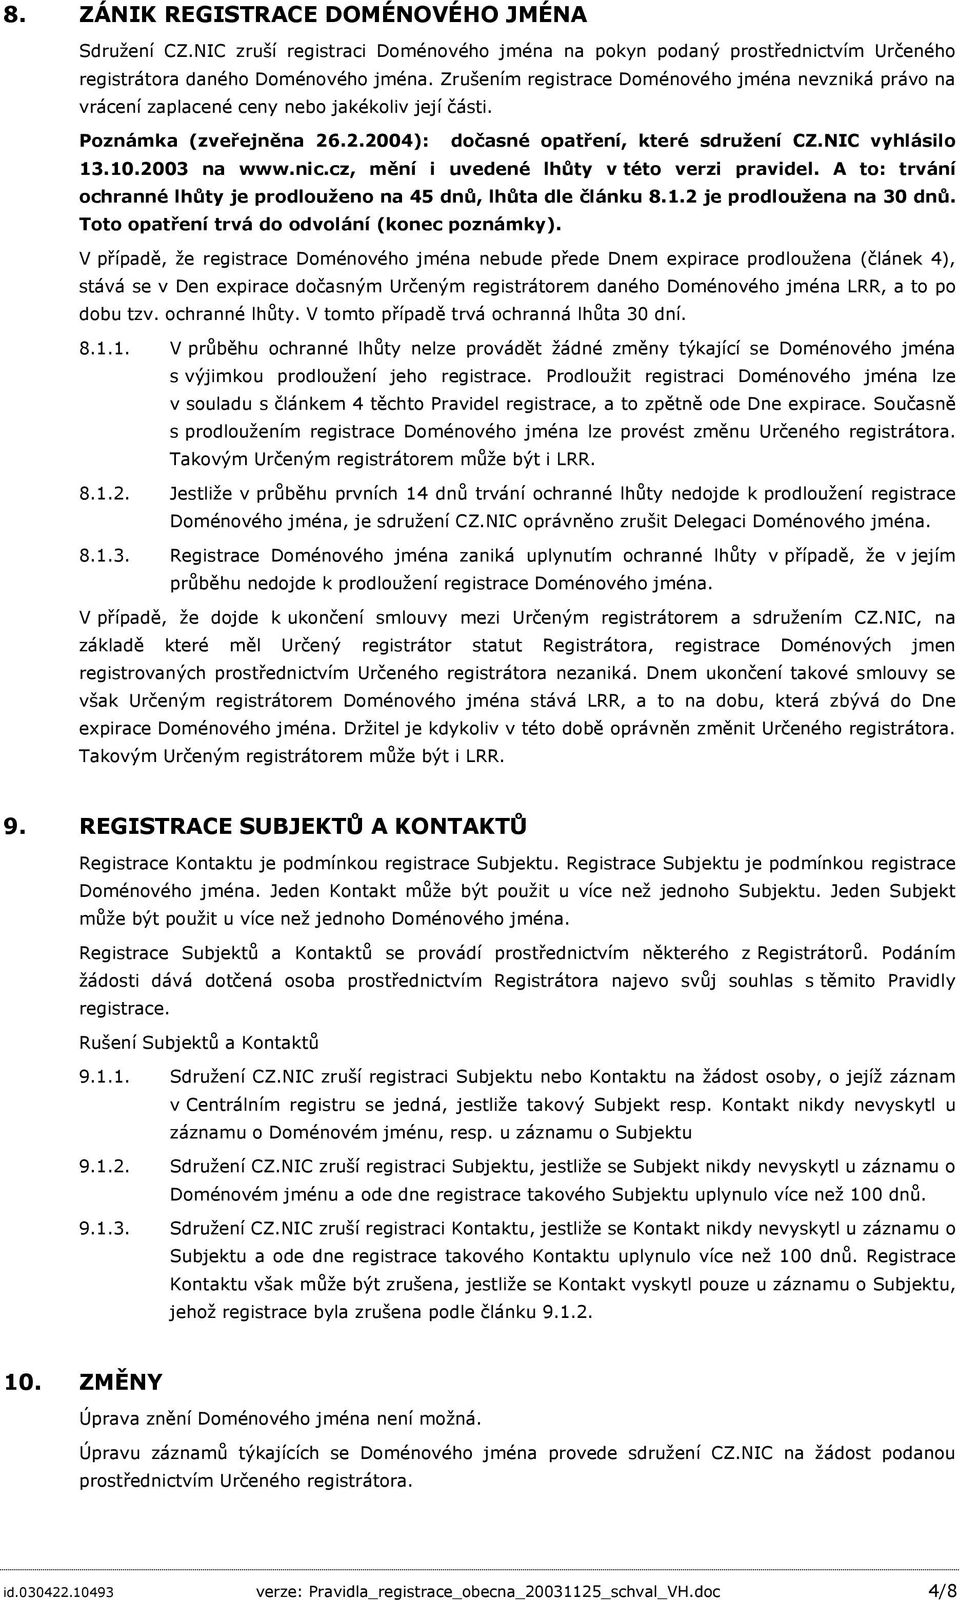 2003 na www.nic.cz, mění i uvedené lhůty v této verzi pravidel. A to: trvání ochranné lhůty je prodlouženo na 45 dnů, lhůta dle článku 8.1.2 je prodloužena na 30 dnů.